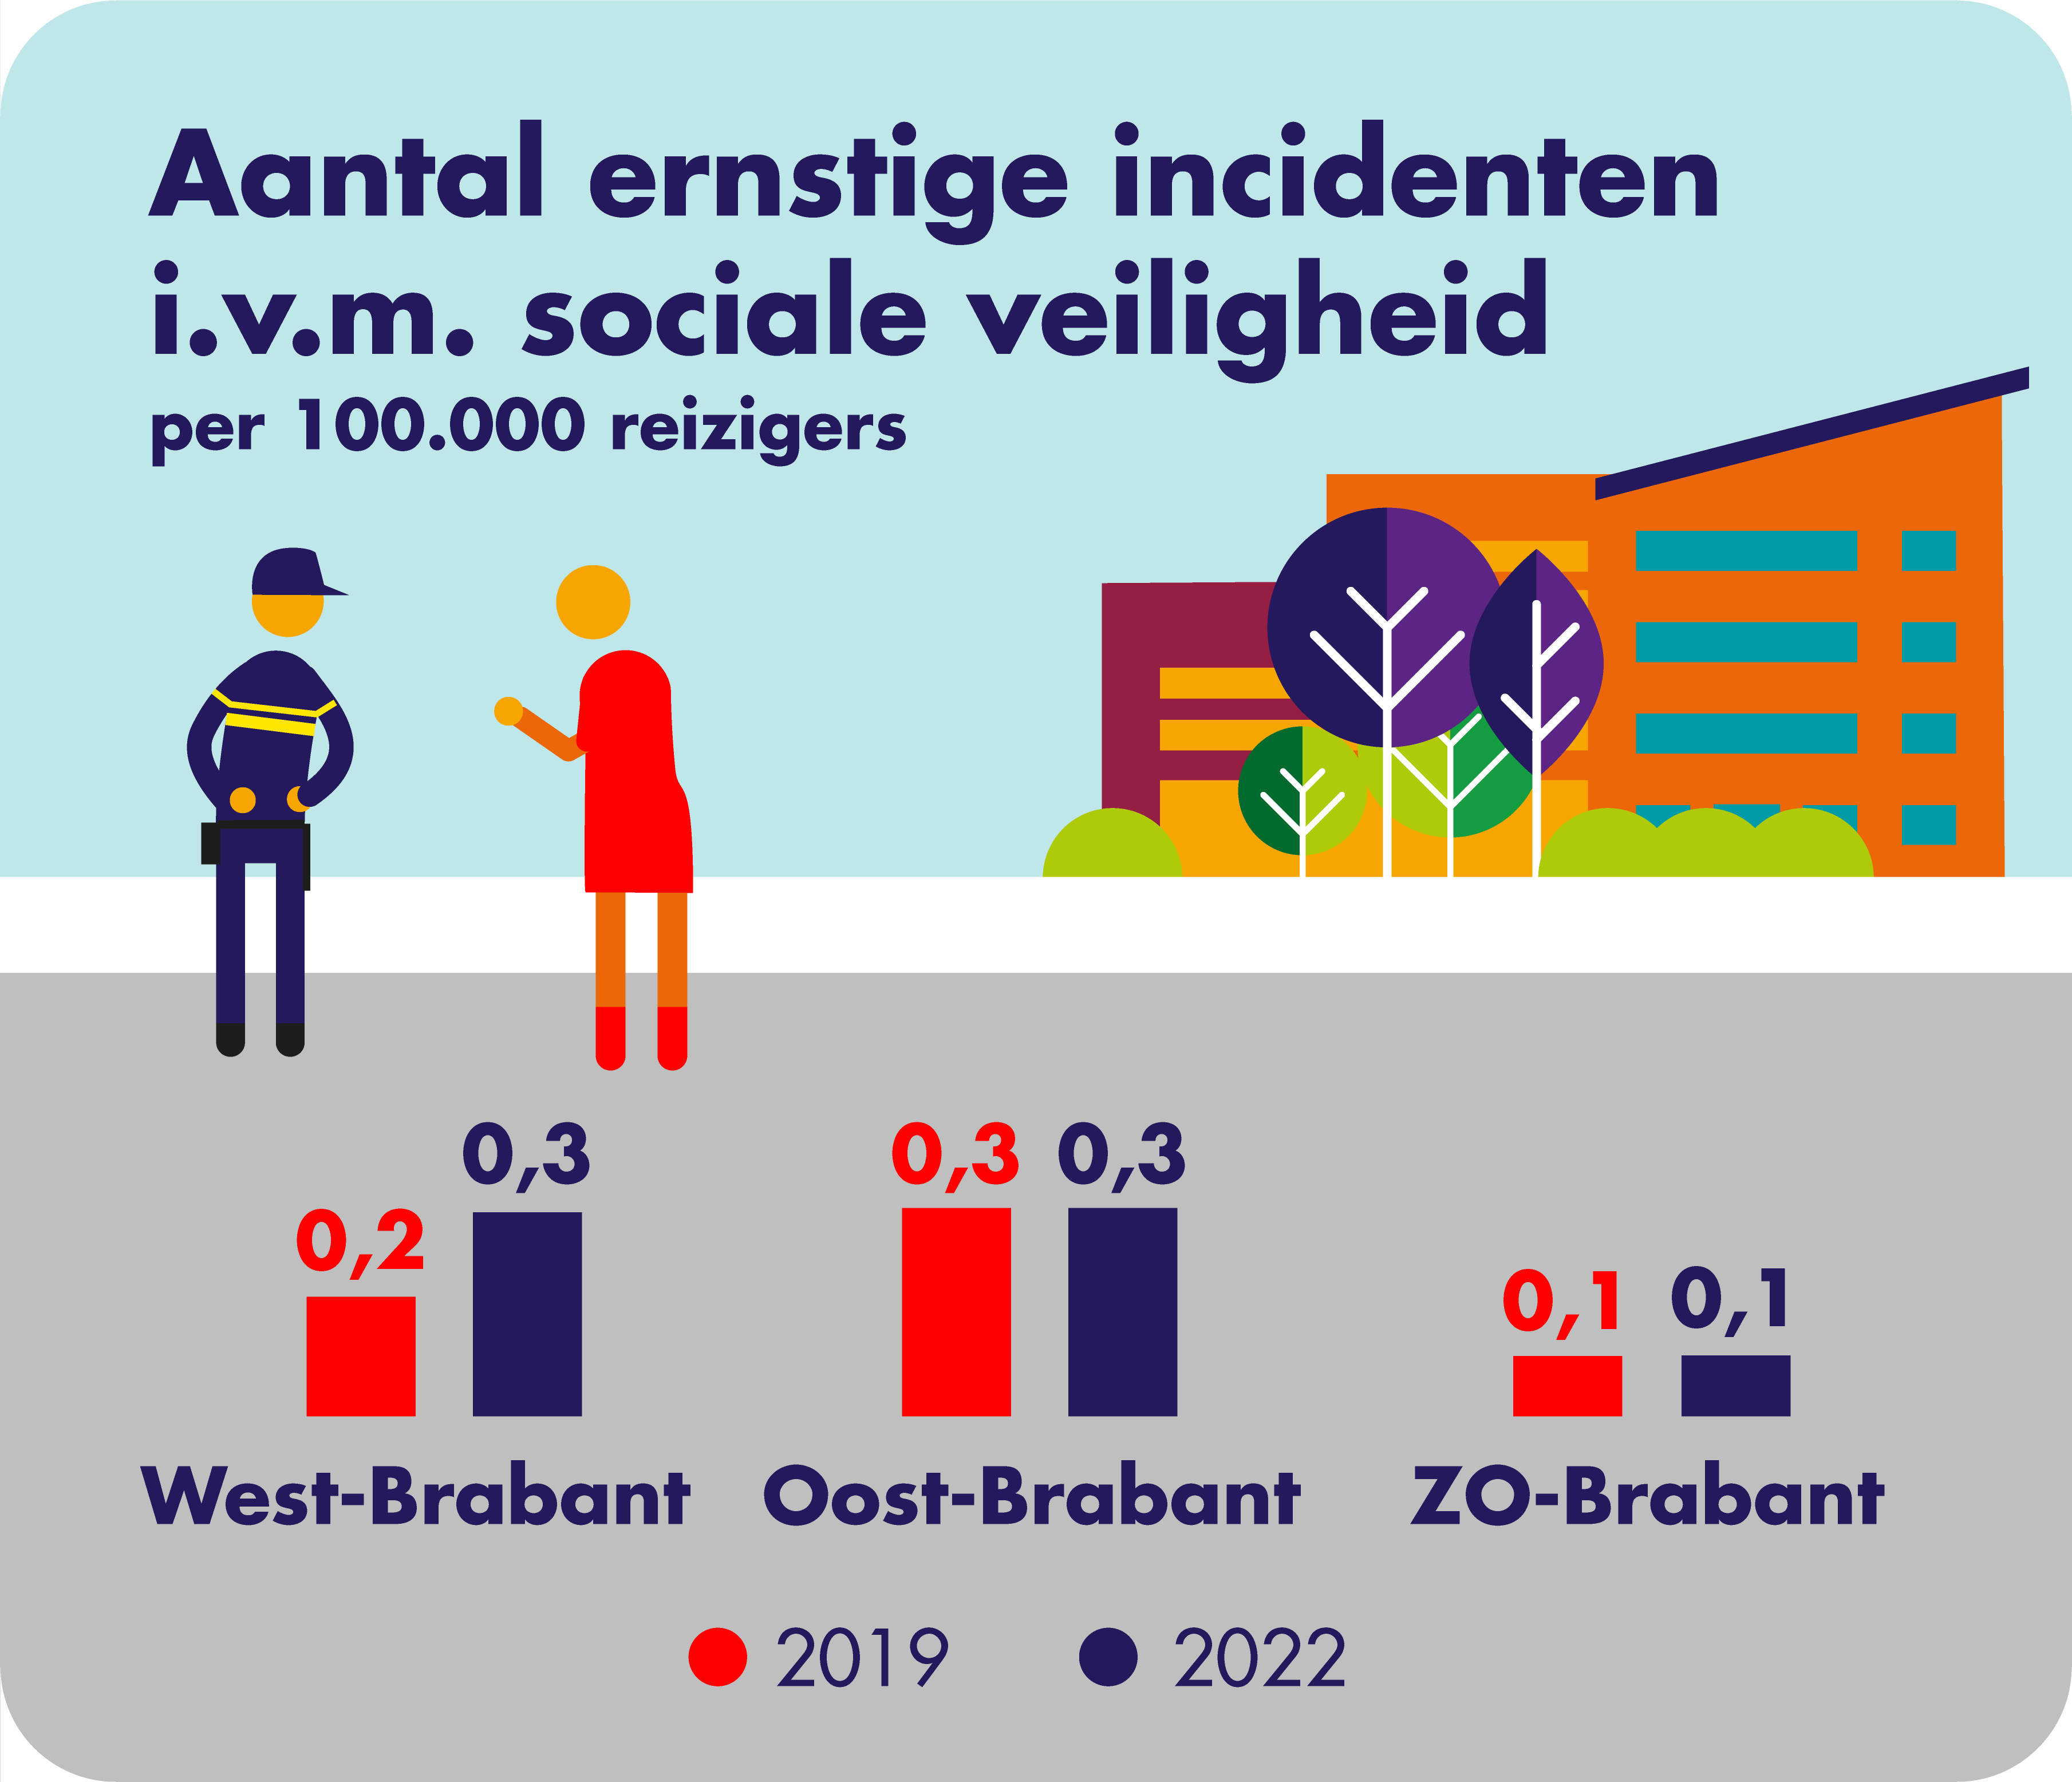 Op deze afbeelding is het aantal ernstige incidenten in verband met sociale veiligheid per concessiegebied weergegeven. In West-Brabant waren dit er in 2019 0,2 per 100.000 reizigers en in 2022 0,3. In Oost-Brabant waren dit er zowel in 2019 als 2022 0,3 per 100.000 reizigers. In Zuidoost-Brabant waren dit er zowel in 2019 als in 2022 0,1 per 100.000 reizigers.